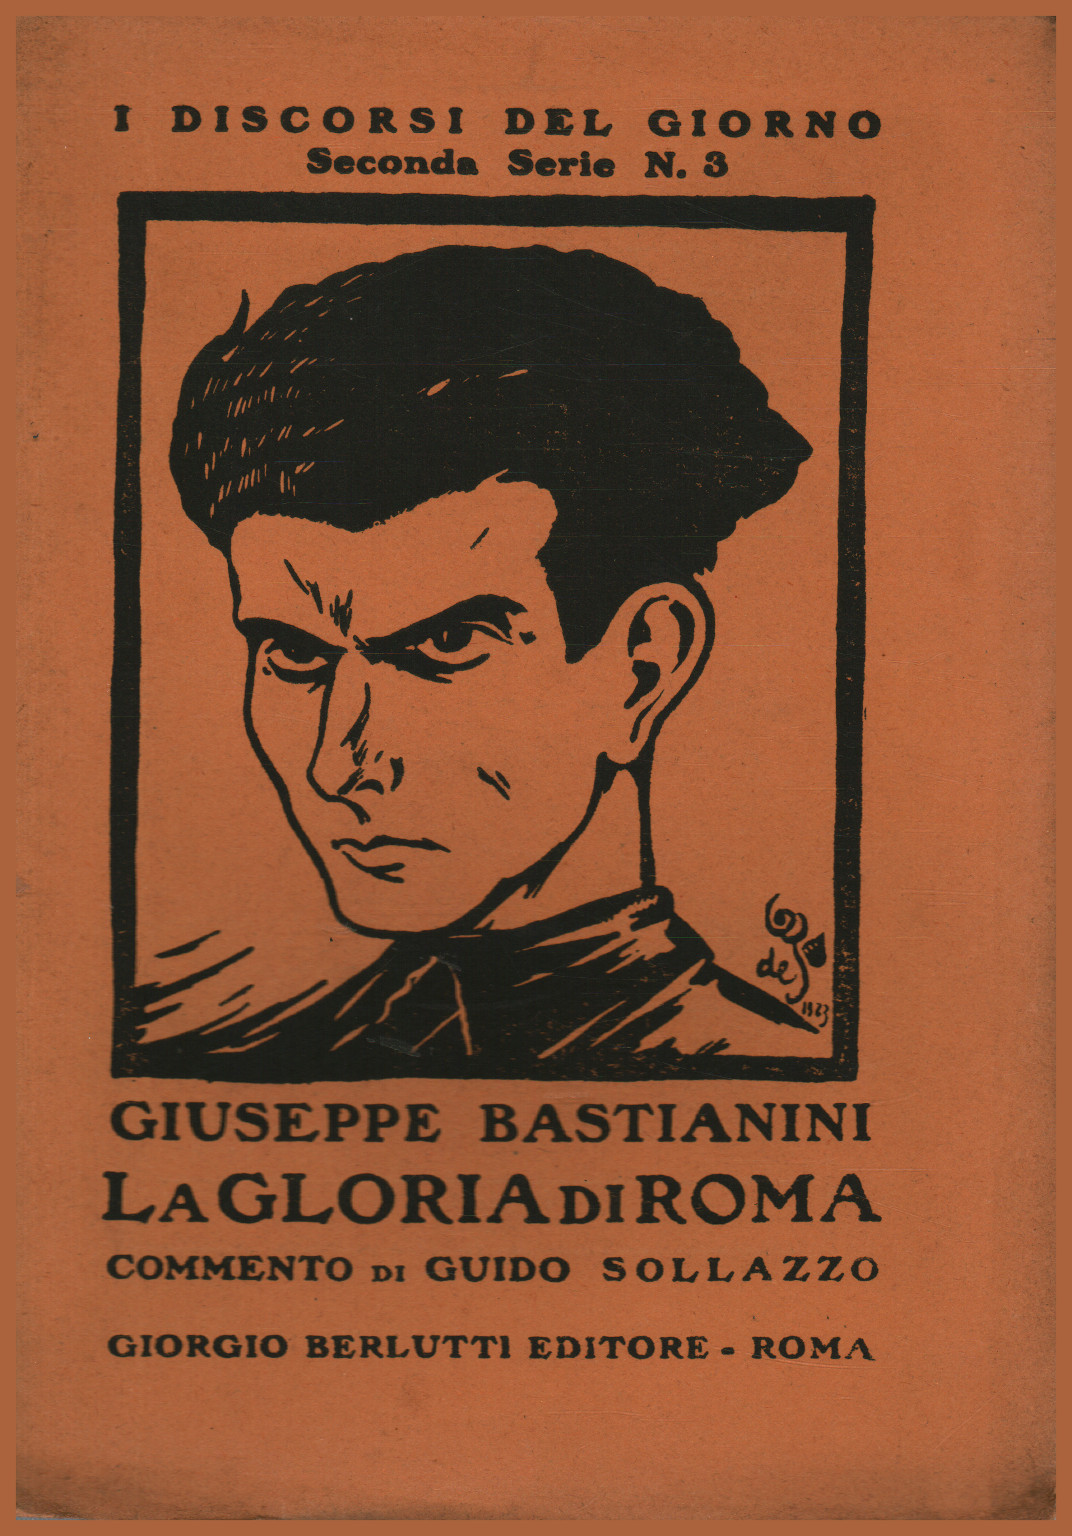 La gloria di Roma, Giuseppe Bastianini